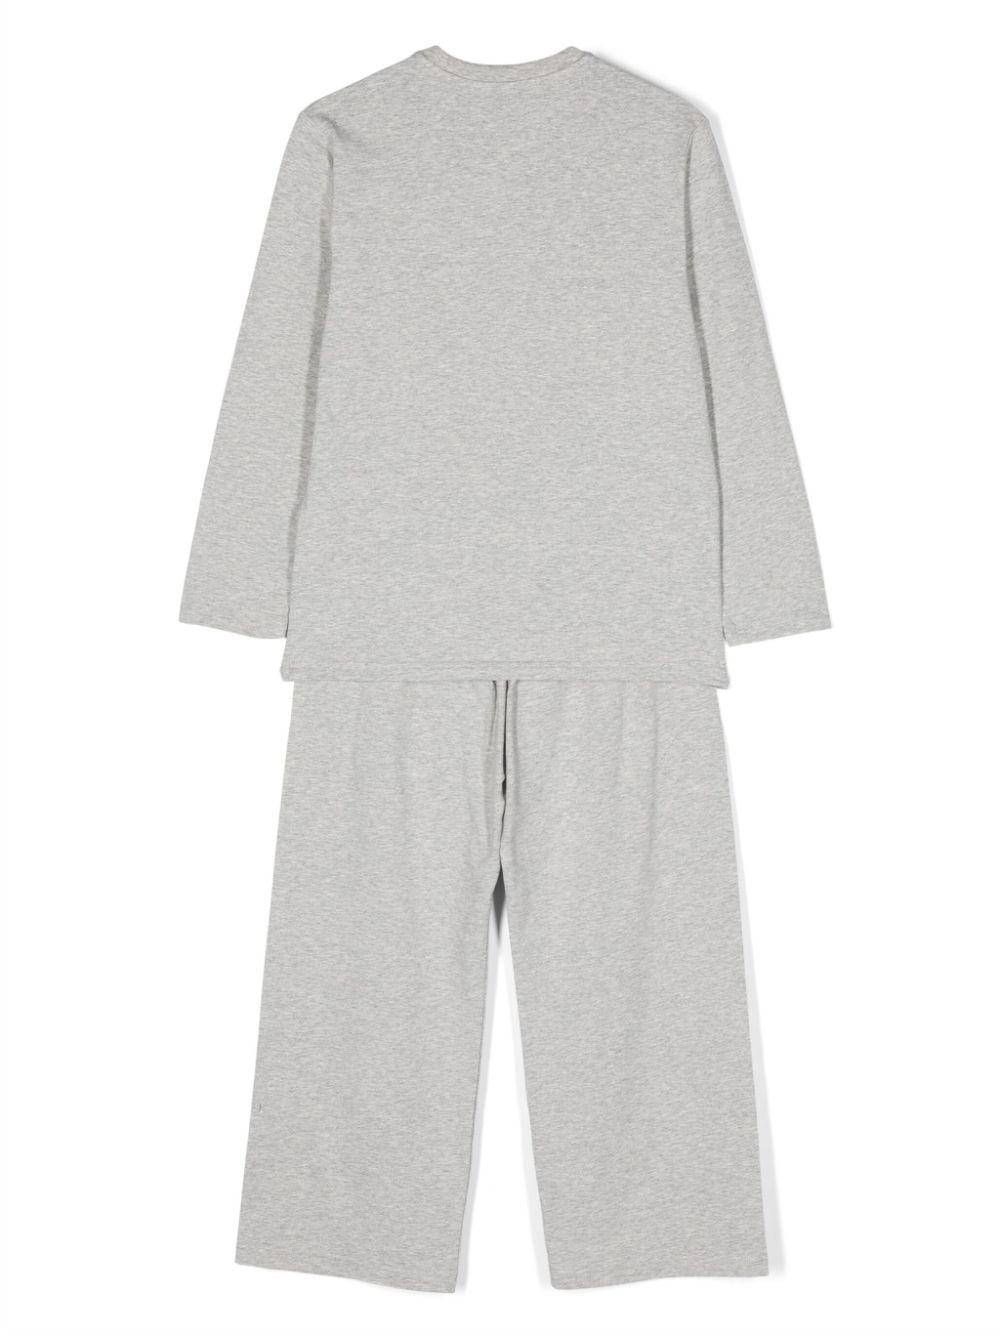 Pyjama enfant gris avec imprimé